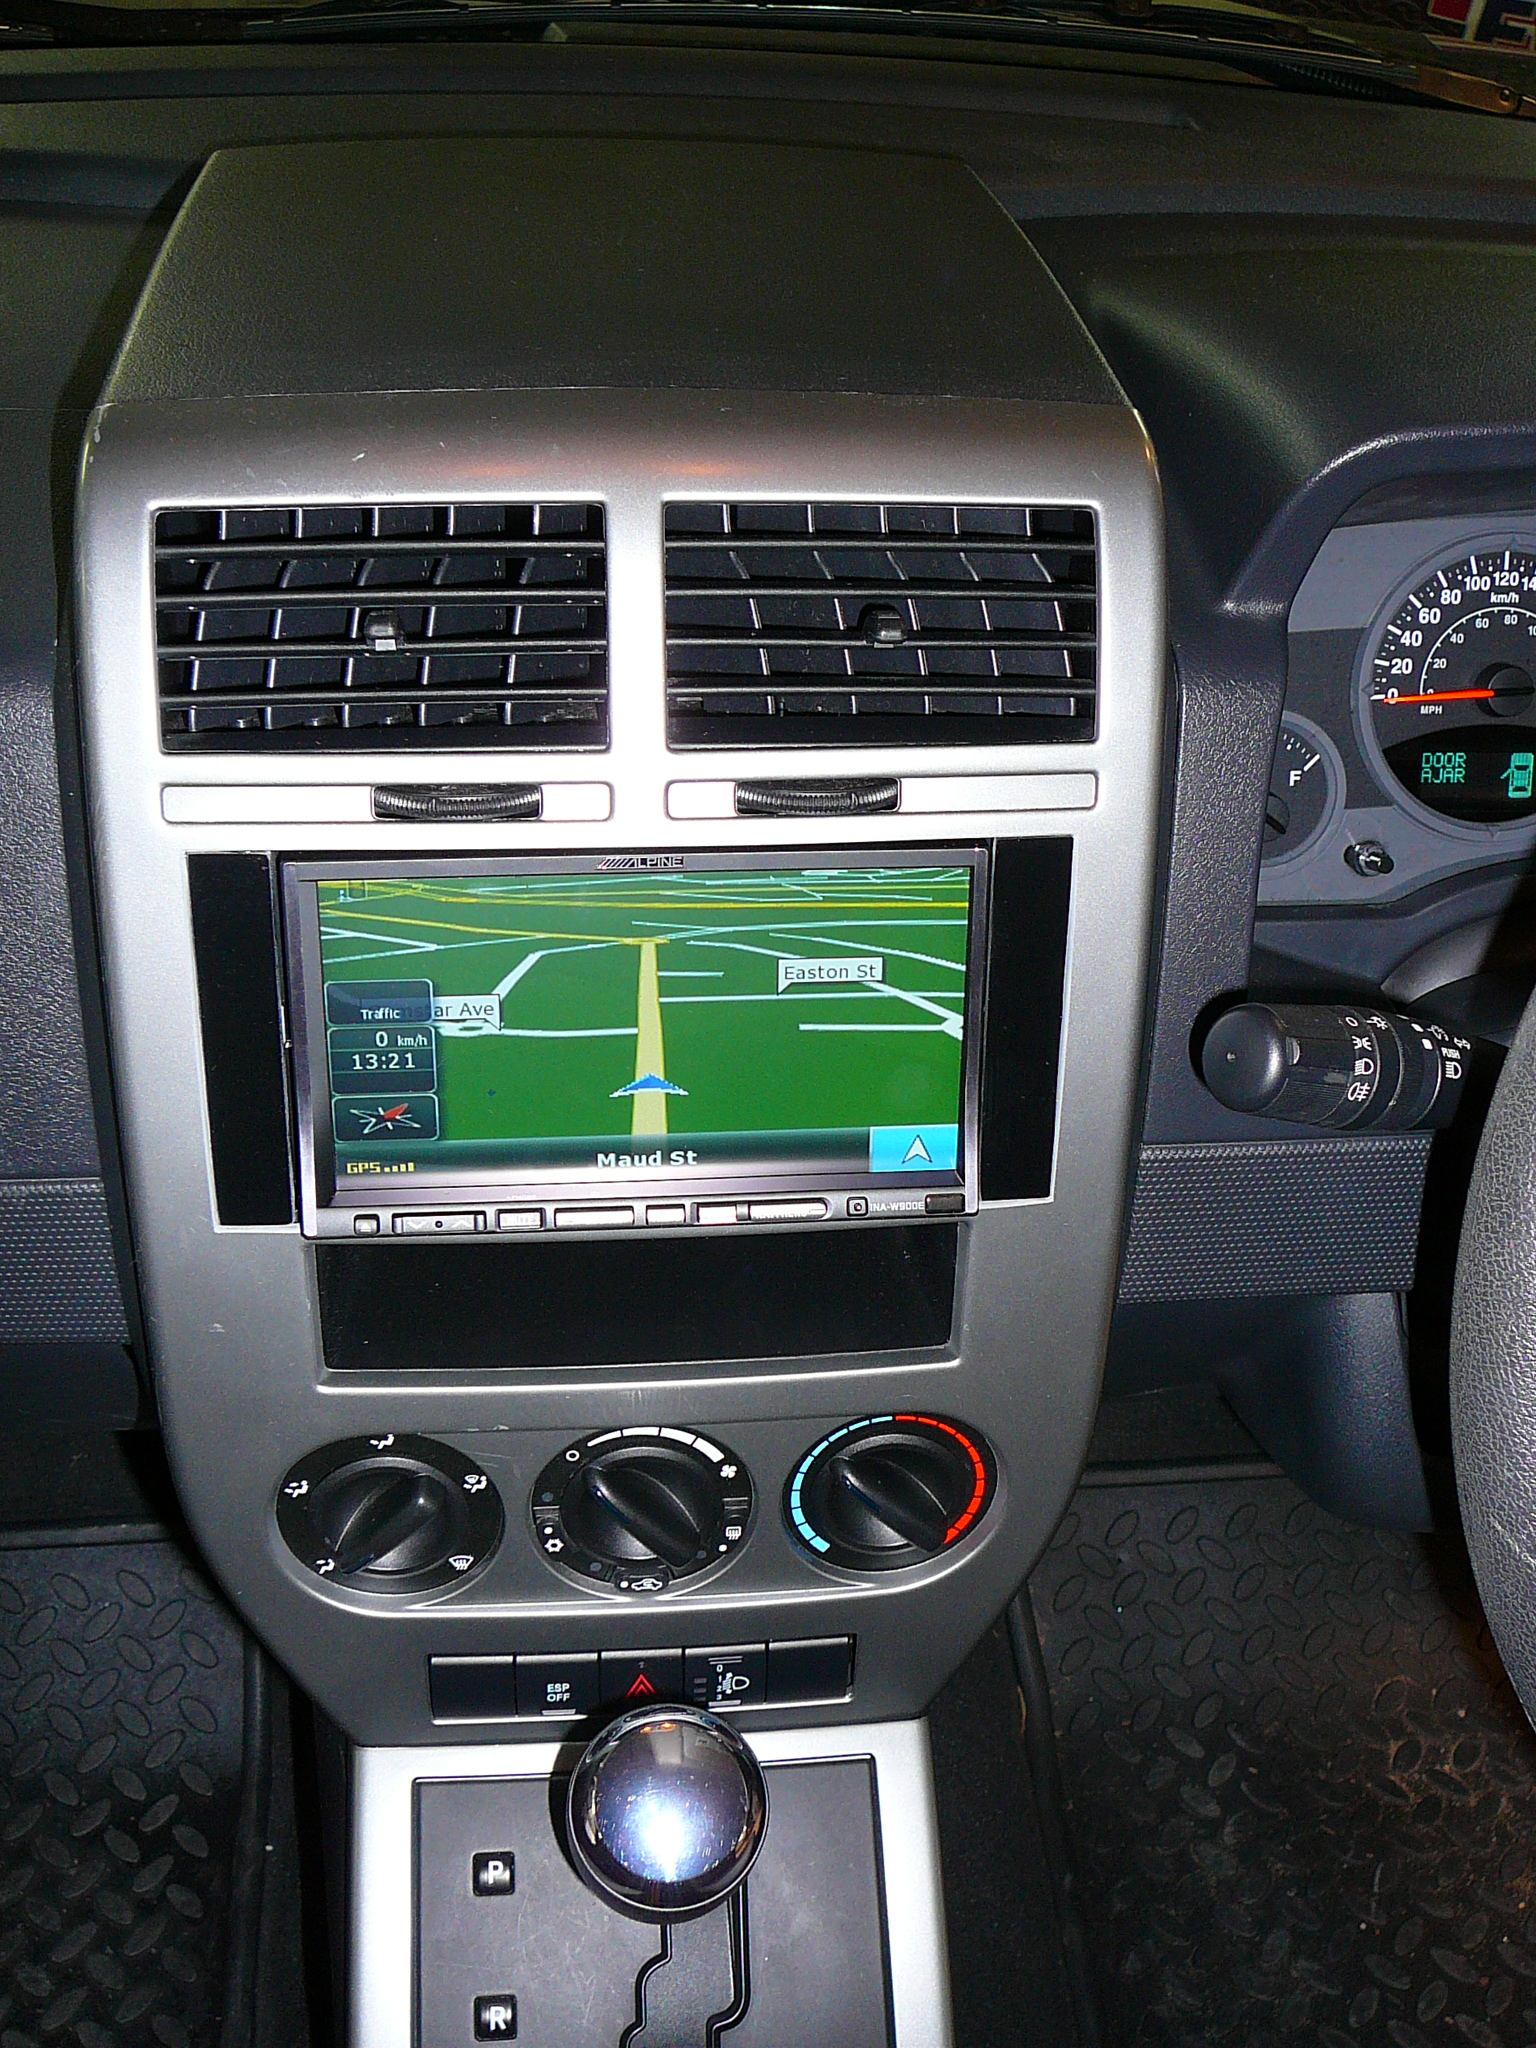 Jeep Patriot 2007 Alpine GPS Navigation